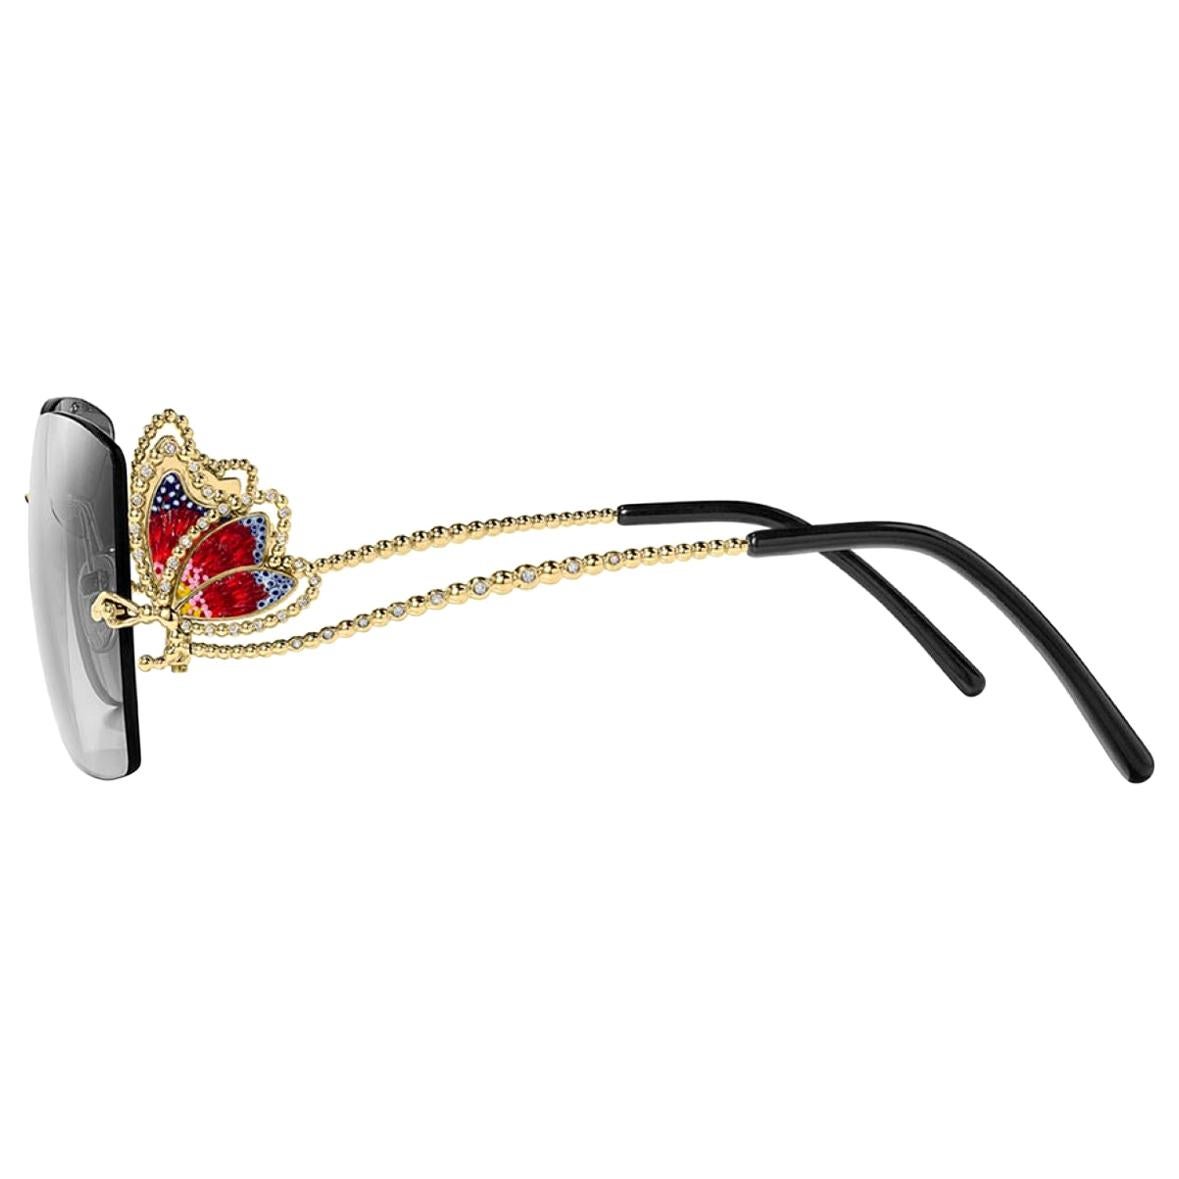 Sonnenbrille aus Gold mit weißen Diamanten, 18KT, von Hand mit Mikromosaik-Technik verziert